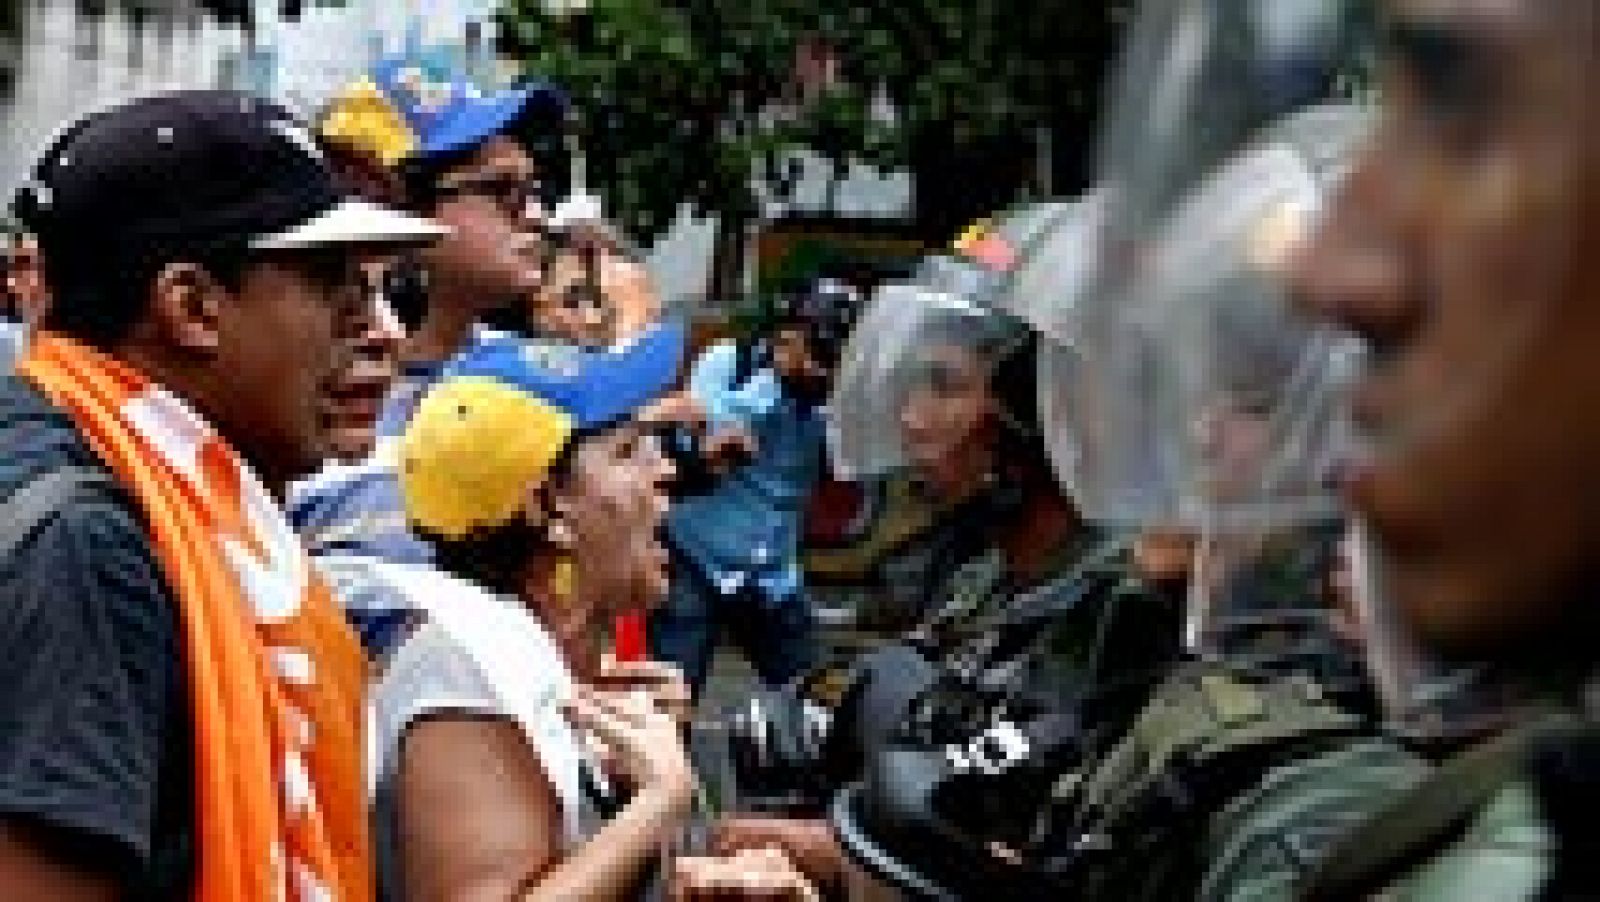 La policía de Venezuela se ha enfrentado a los opositores en las calles de Caracas